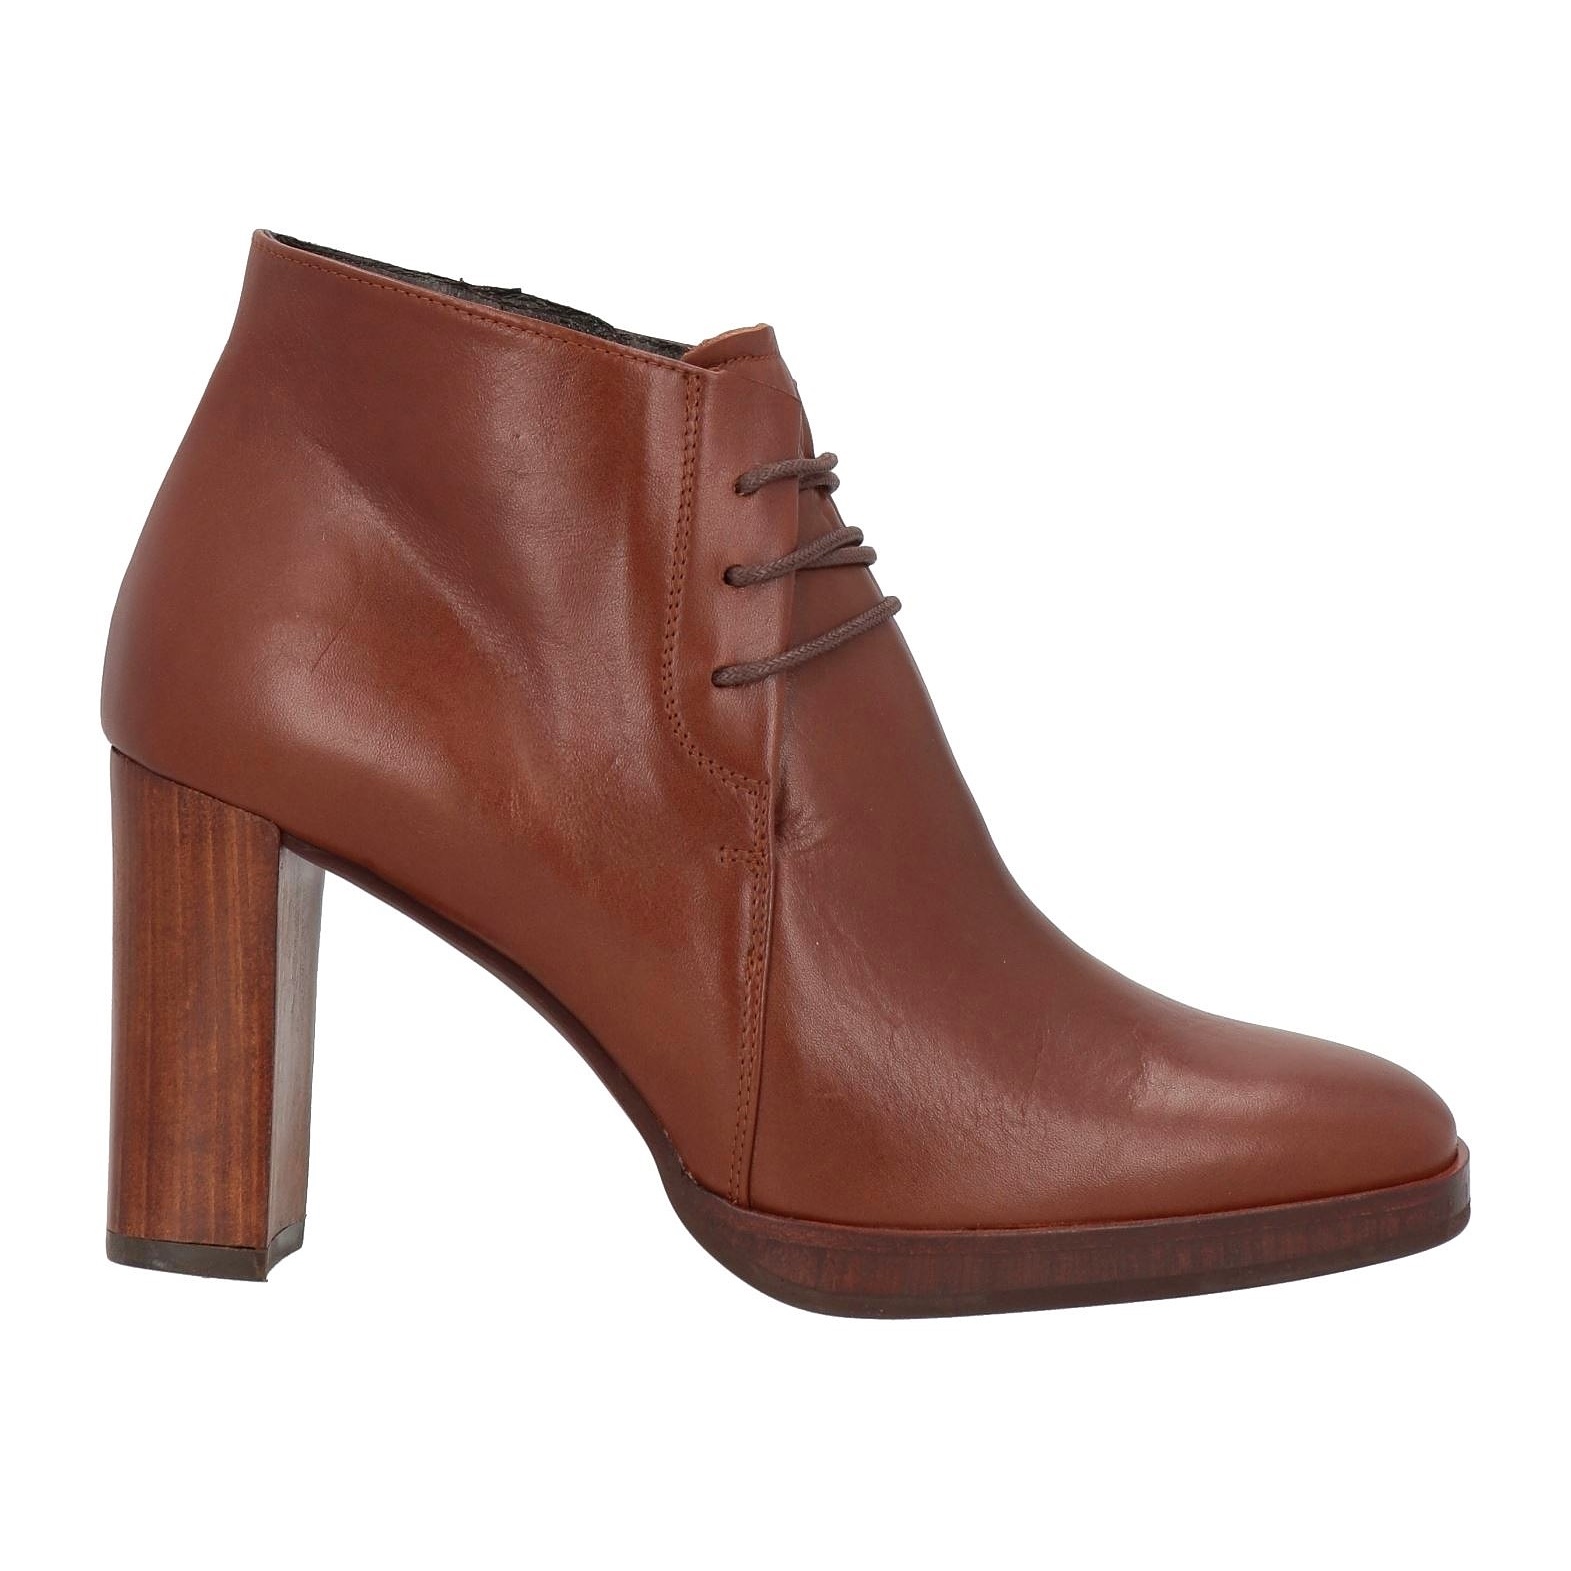 Ботинки Zinda Lace-up Leather Round Toe Square Heel, коричневый ботинки кожаные на шнуровке 42 черный